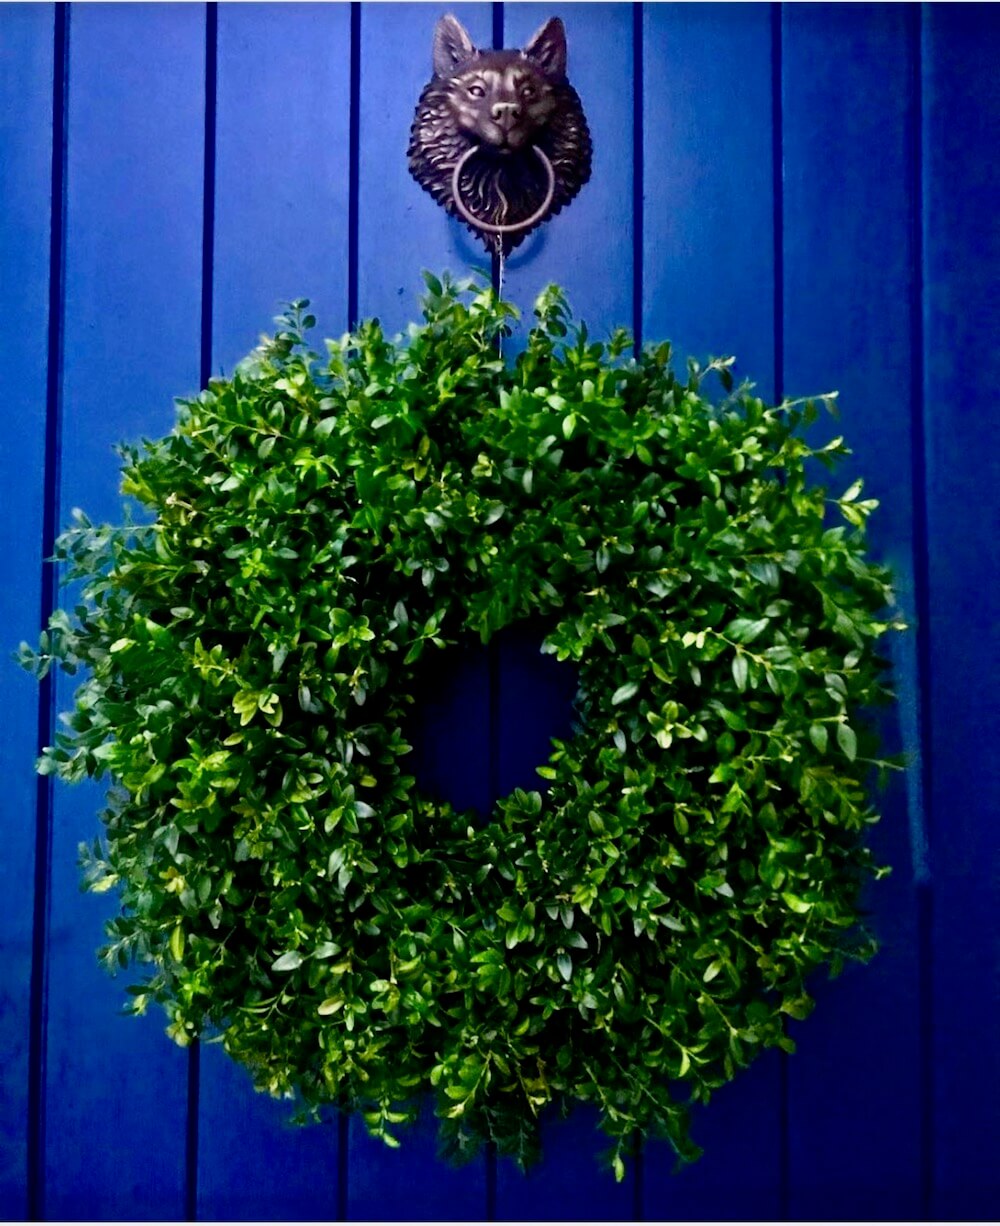 Buxus wreath against blue front door